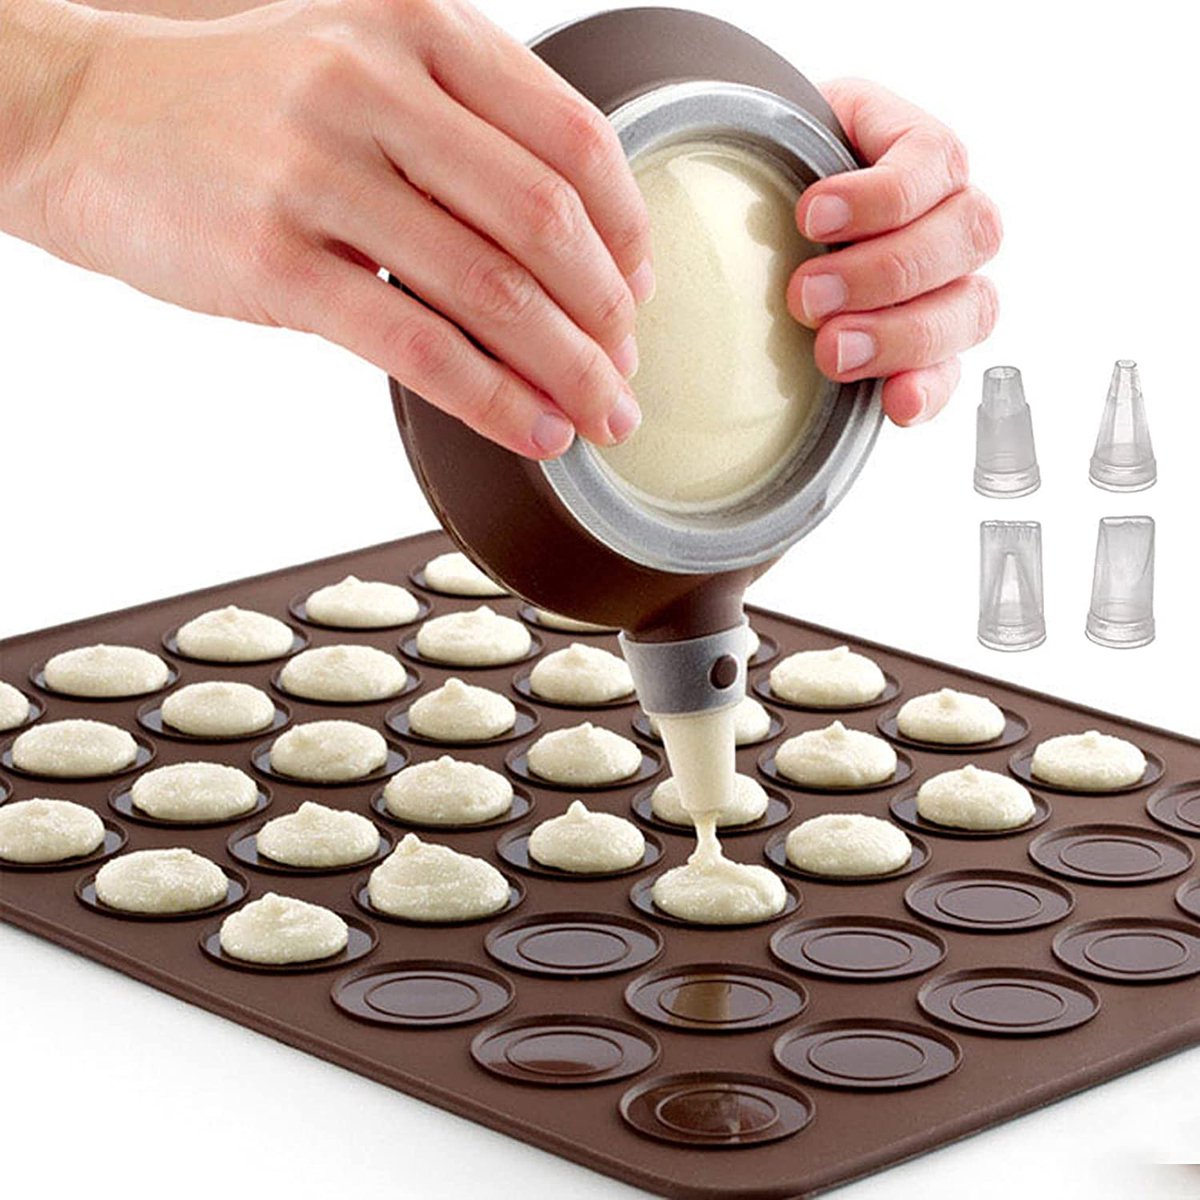 Macaron Maker Set - Moule en Siliconen pour 48 macarons - Poche à